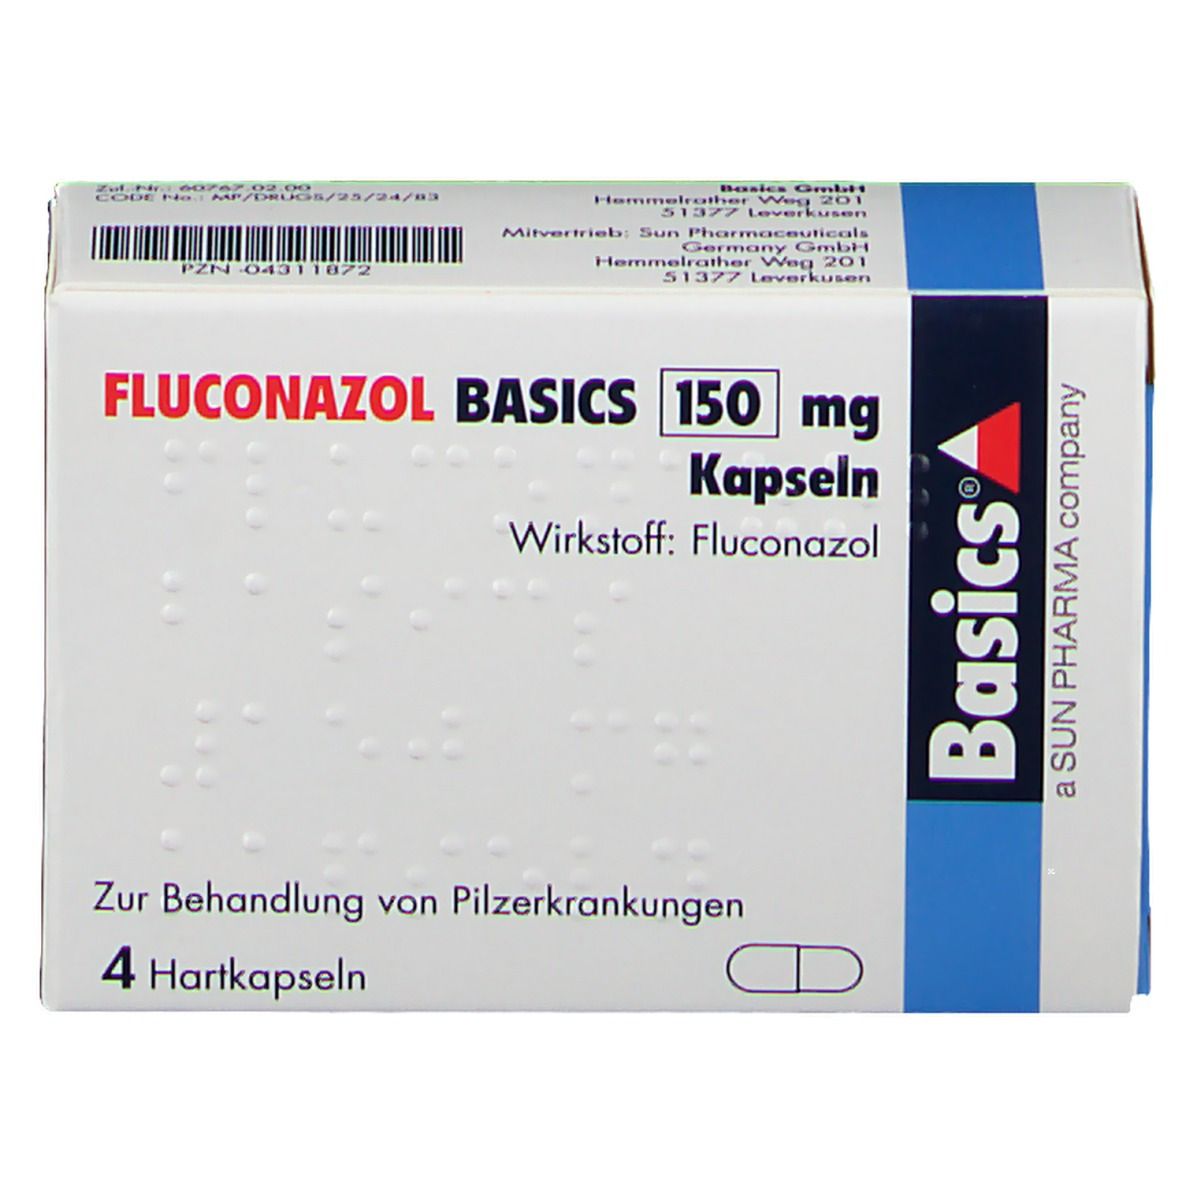 FLUCONAZOL BASICS 150 mg